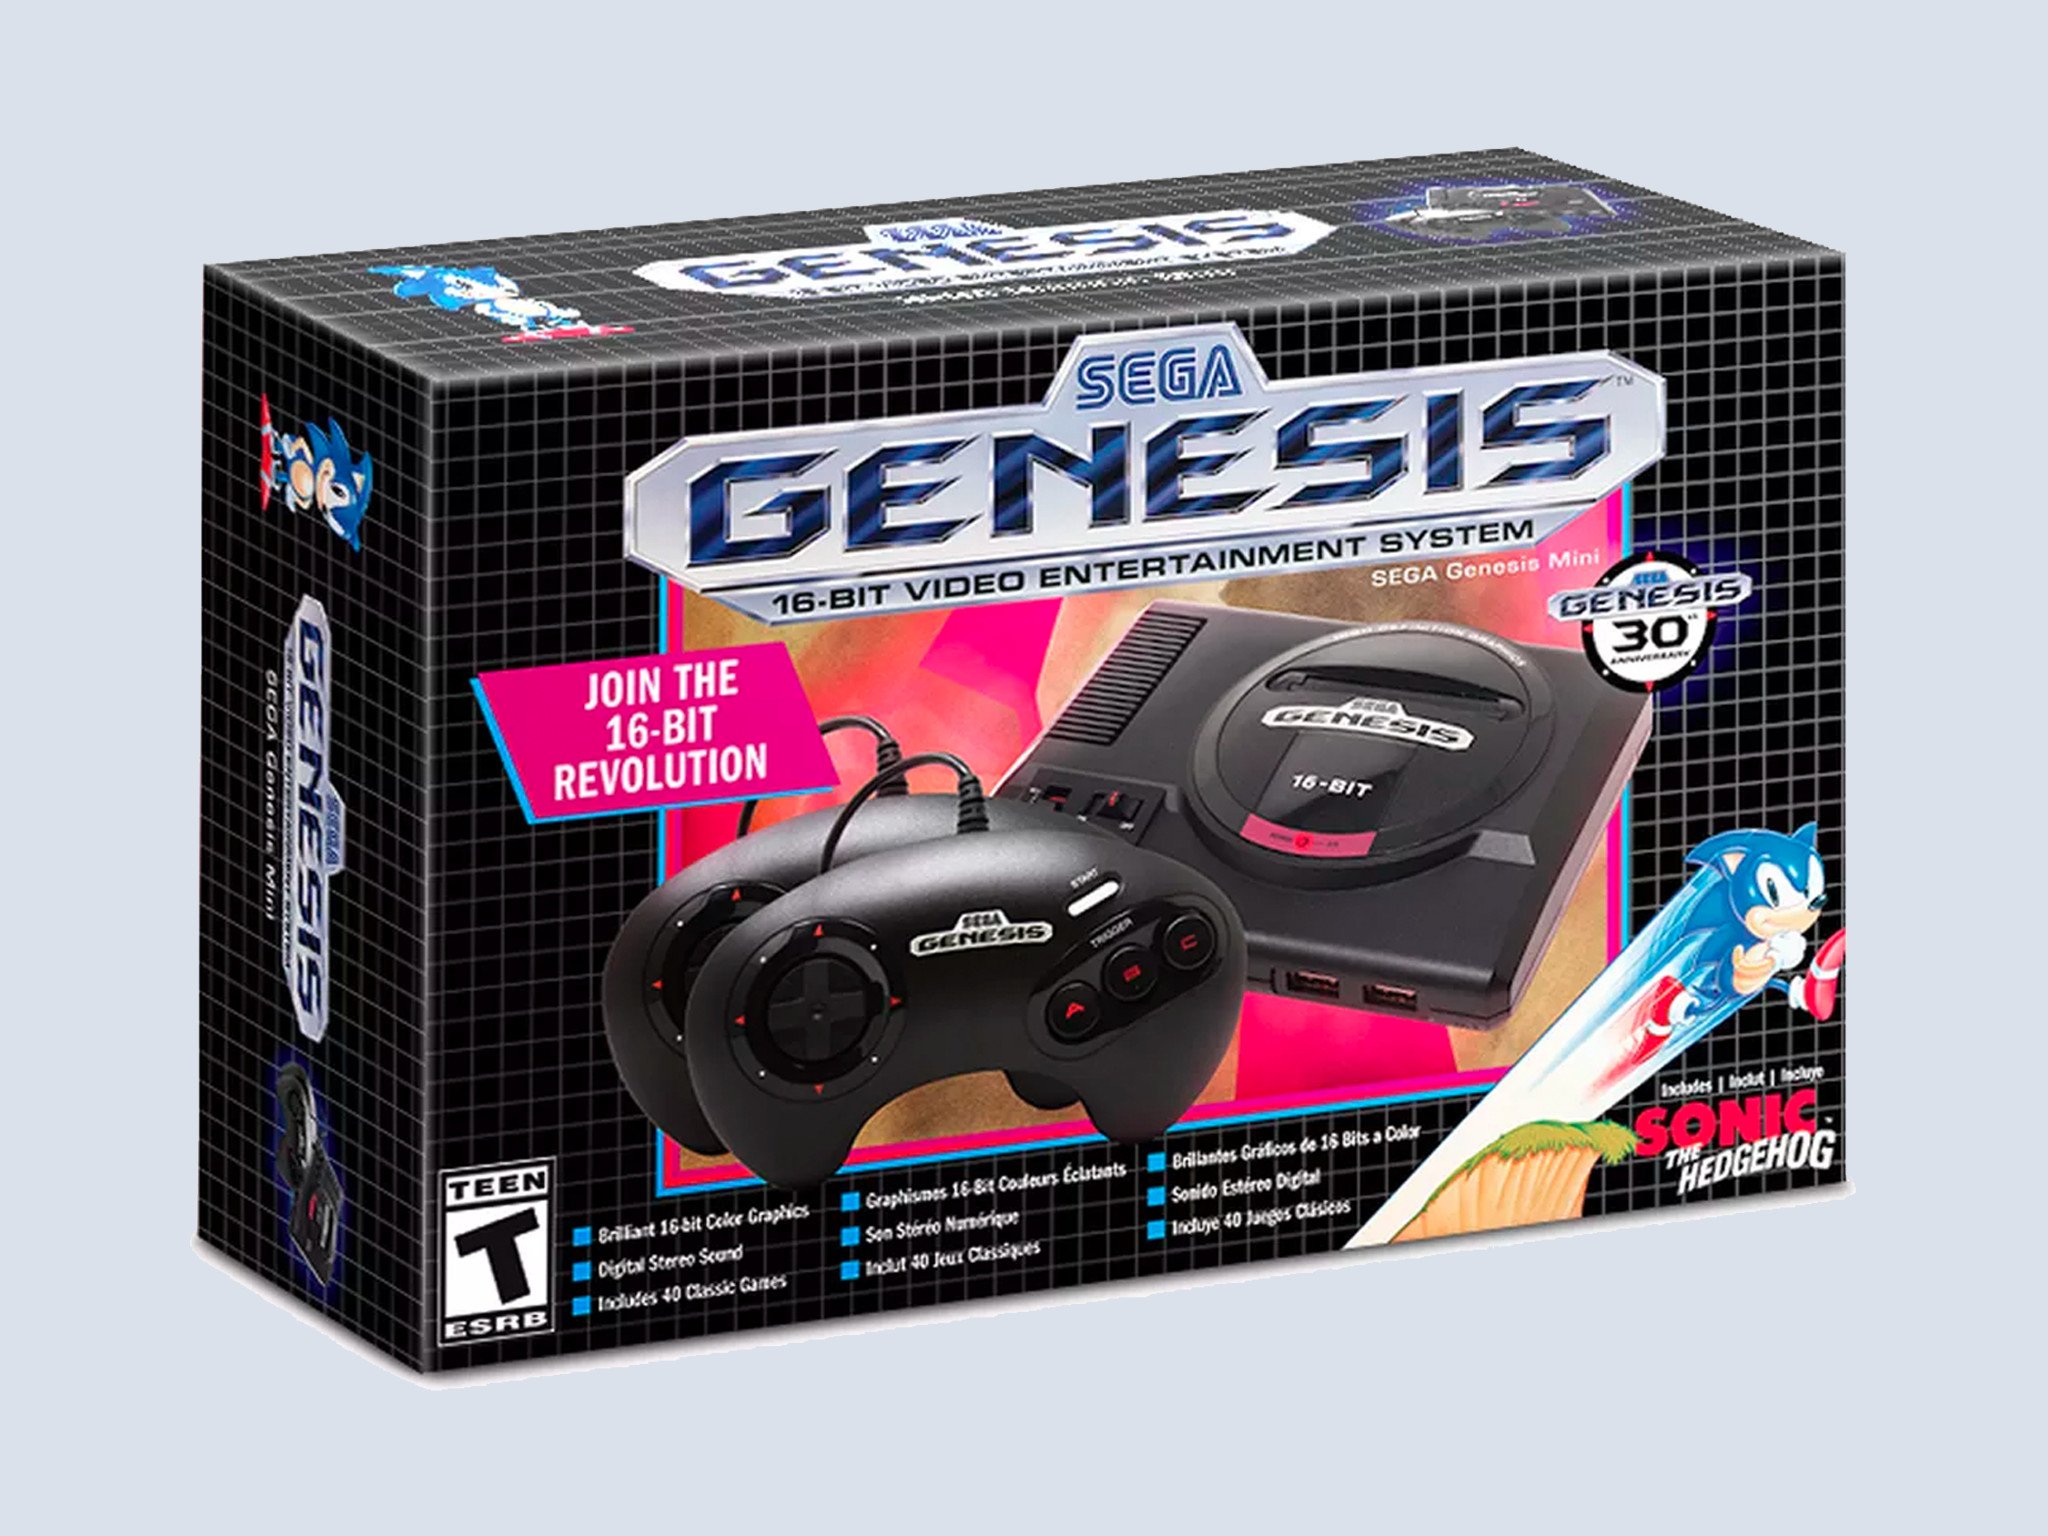 أعد تشغيل المفضلة من الماضي مع SEGA Genesis Mini للبيع مقابل 40 دولارًا فقط اليوم 144